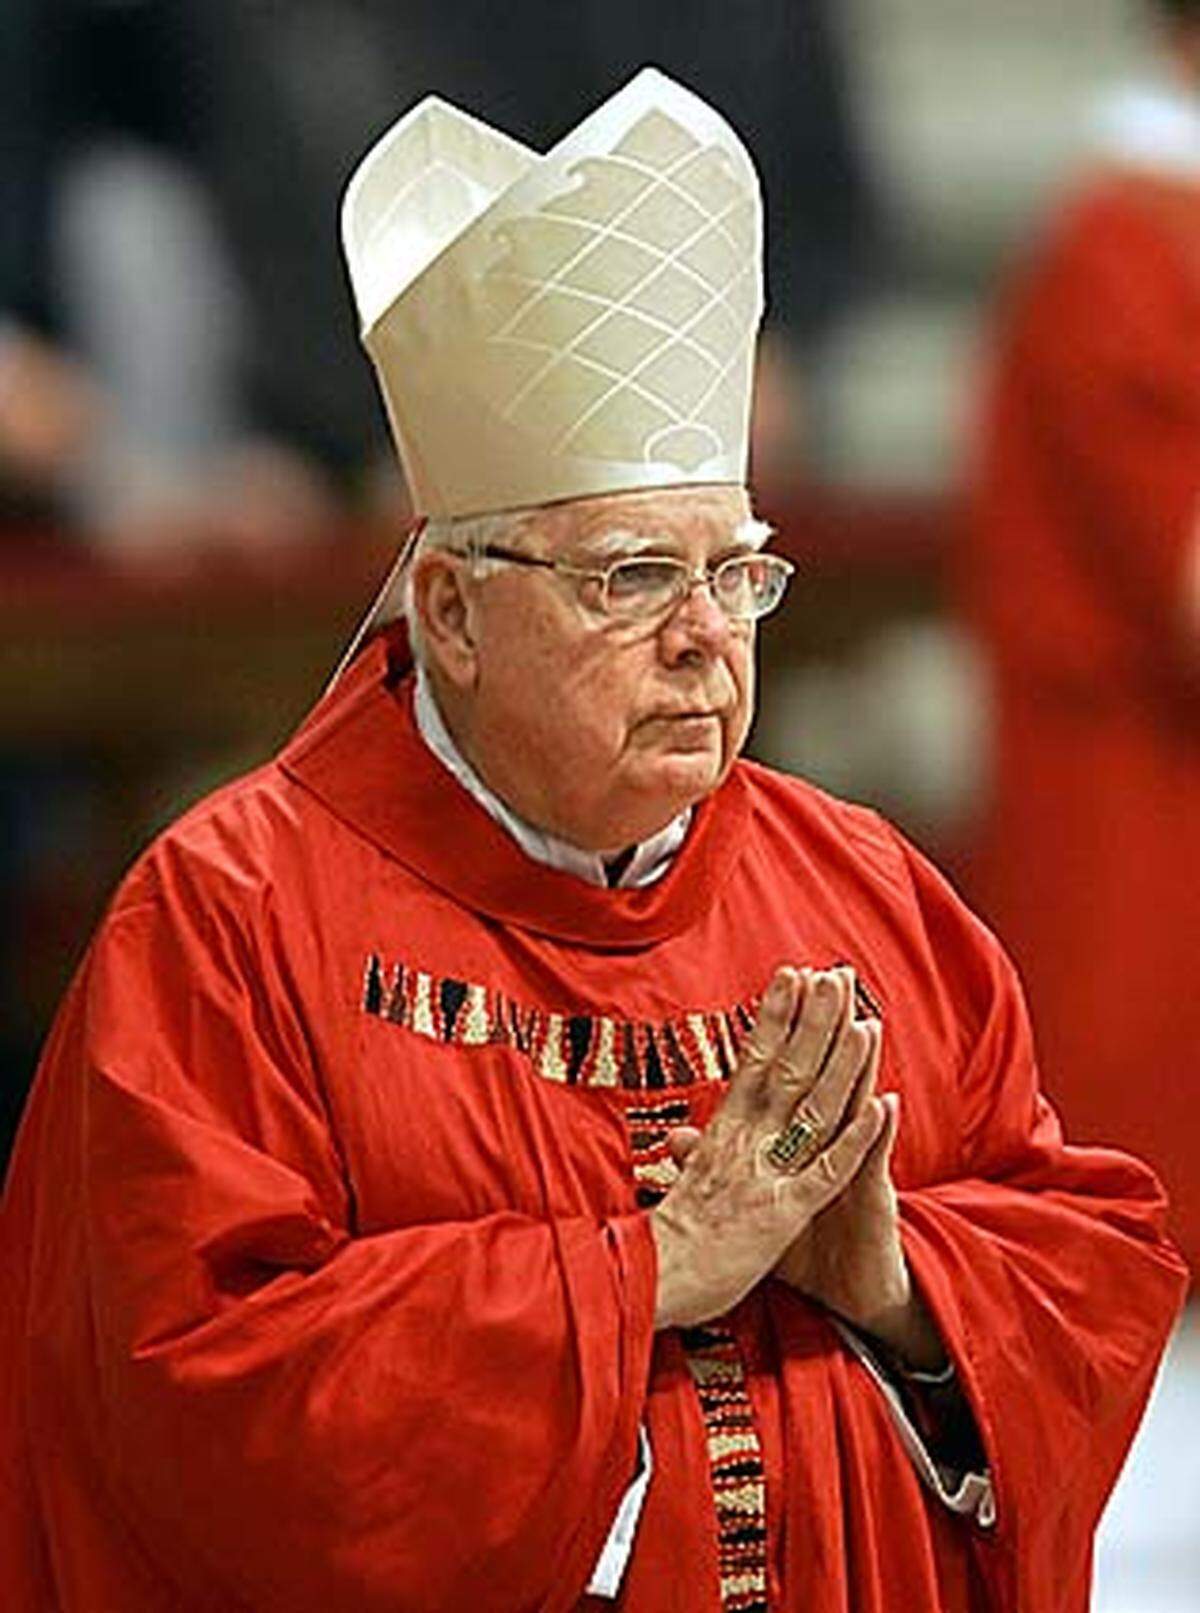 Der Bostoner Kardinal Bernard Law tritt zurück. Ihm wird vorgeworfen, Täter in andere Gemeinden versetzt zu haben, um Missbrauchsfälle zu vertuschen.